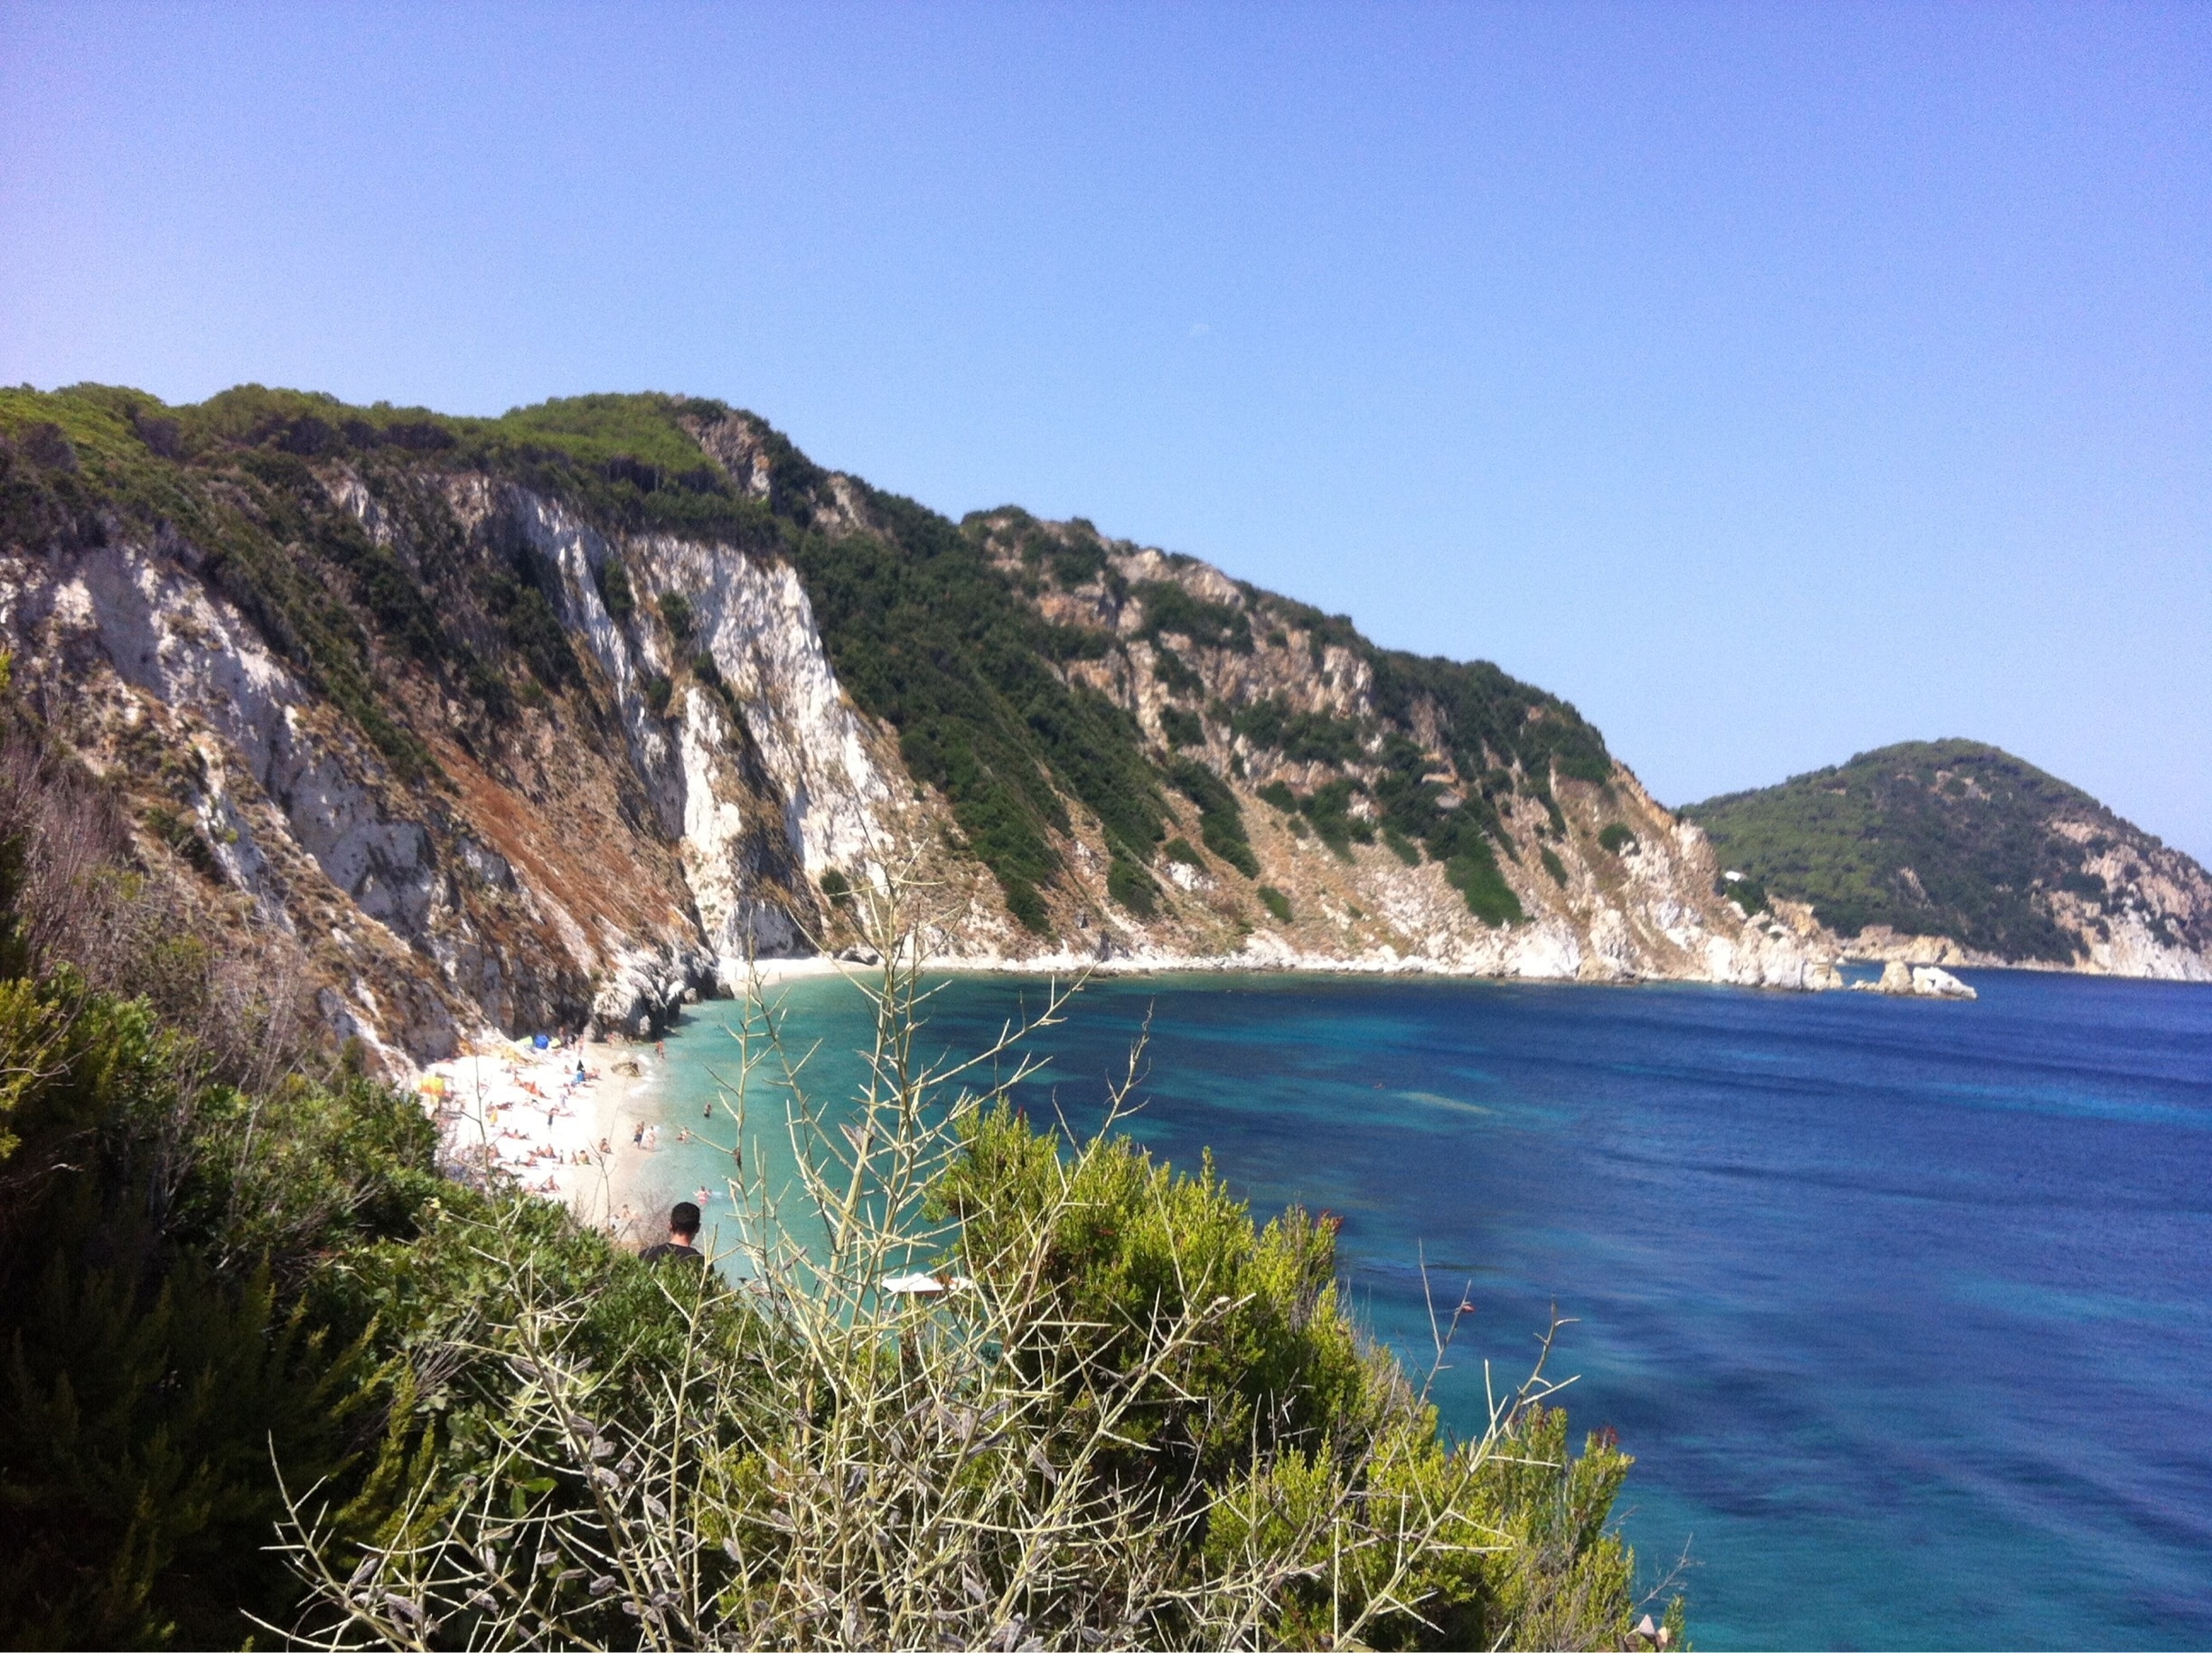 Italy - Elba Island